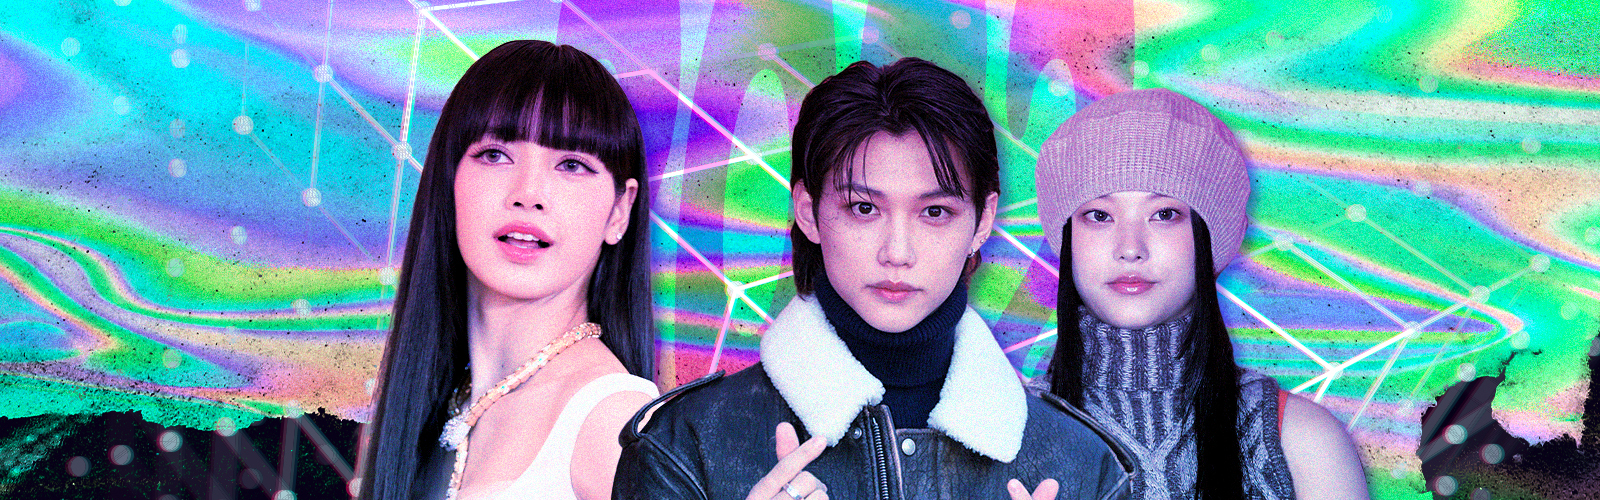 Top 10 K-pop Albums Of 2022 Vanity Teen 虚荣青年 Lifestyle & New Faces Magazine